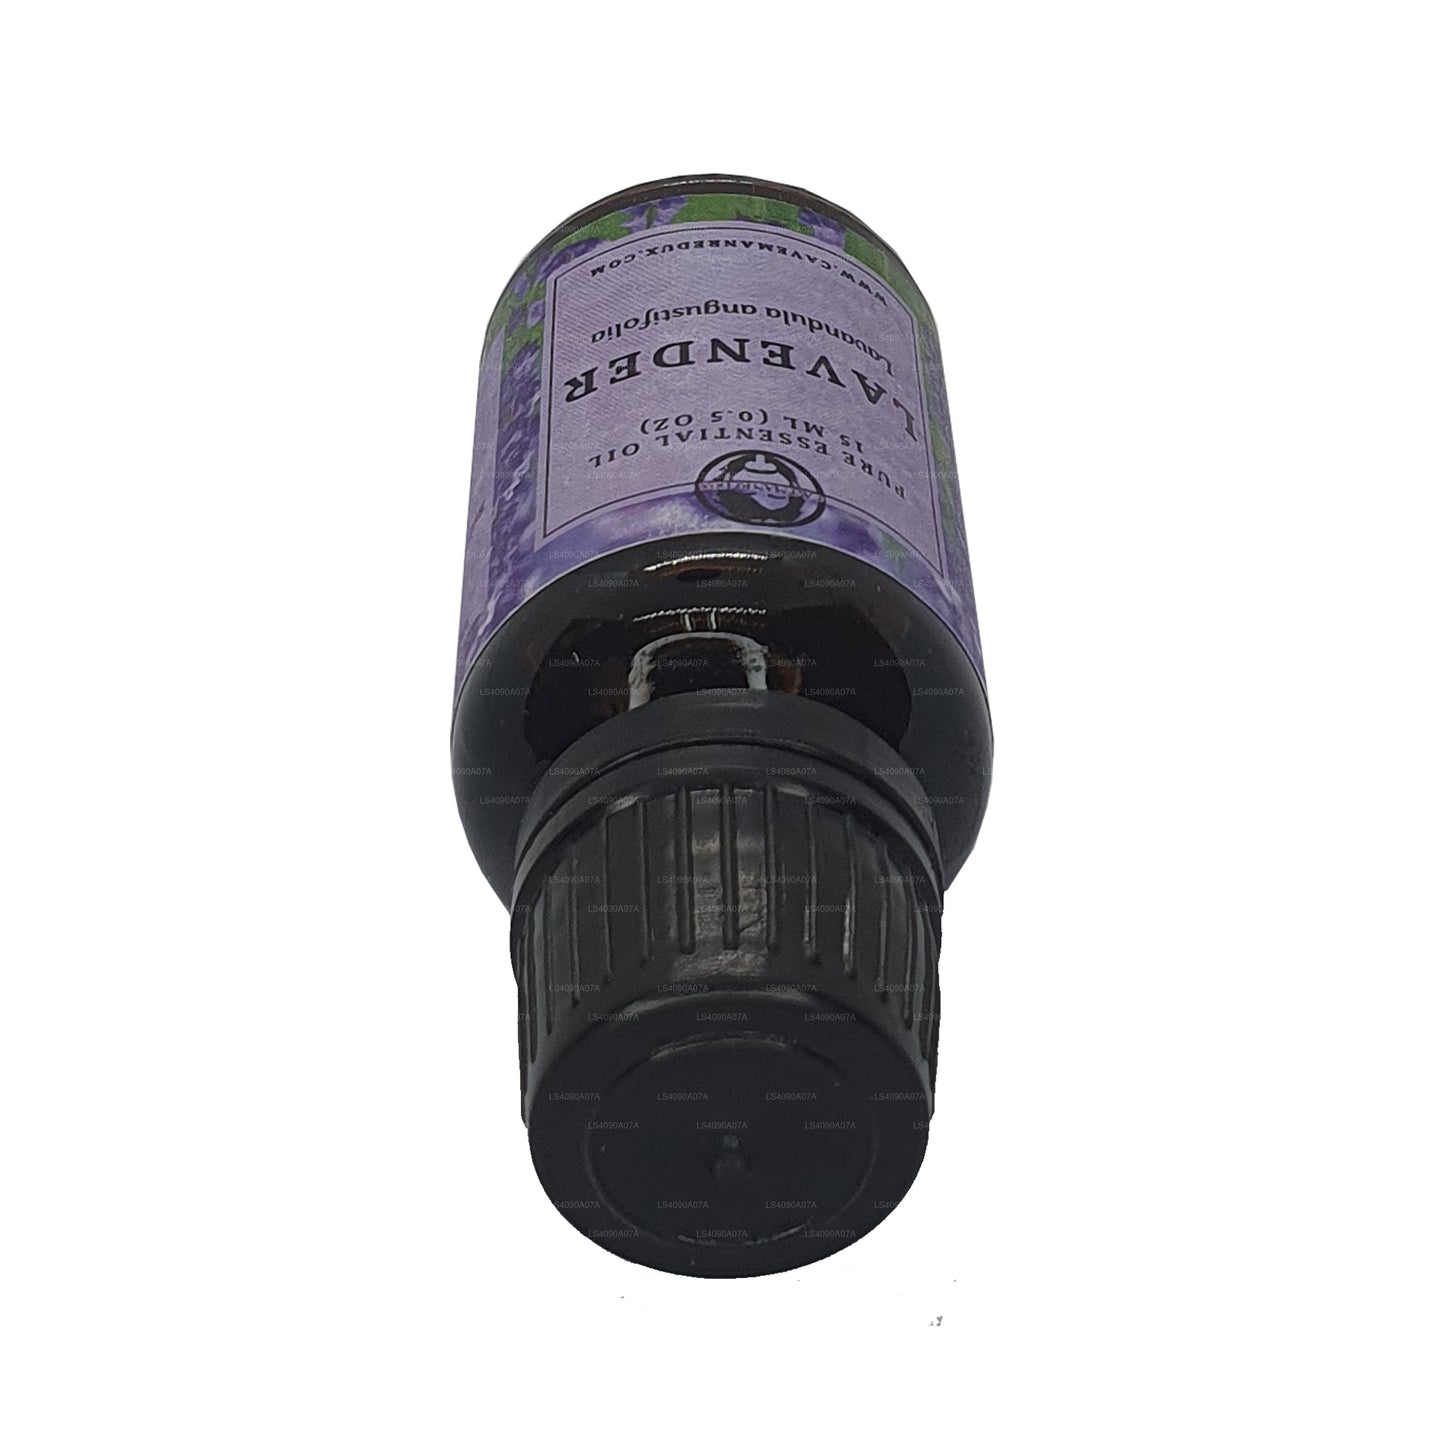 Lakpura Ätherisches Lavendelöl (15 ml)